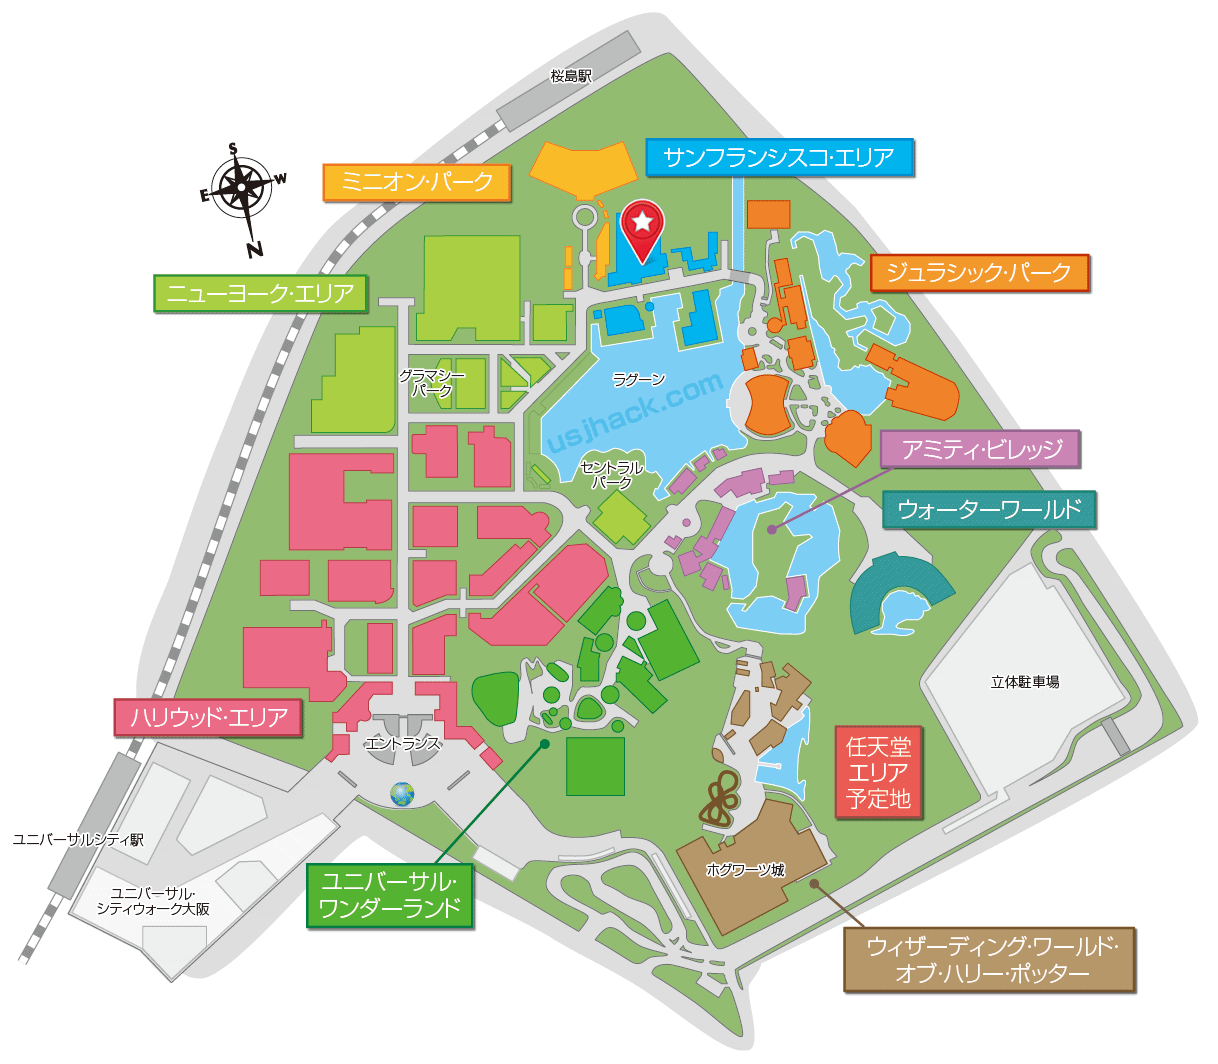 マップで確認するUSJ ザ・サバイバル～デッドマンズ・フォレスト2～2018の開催場所